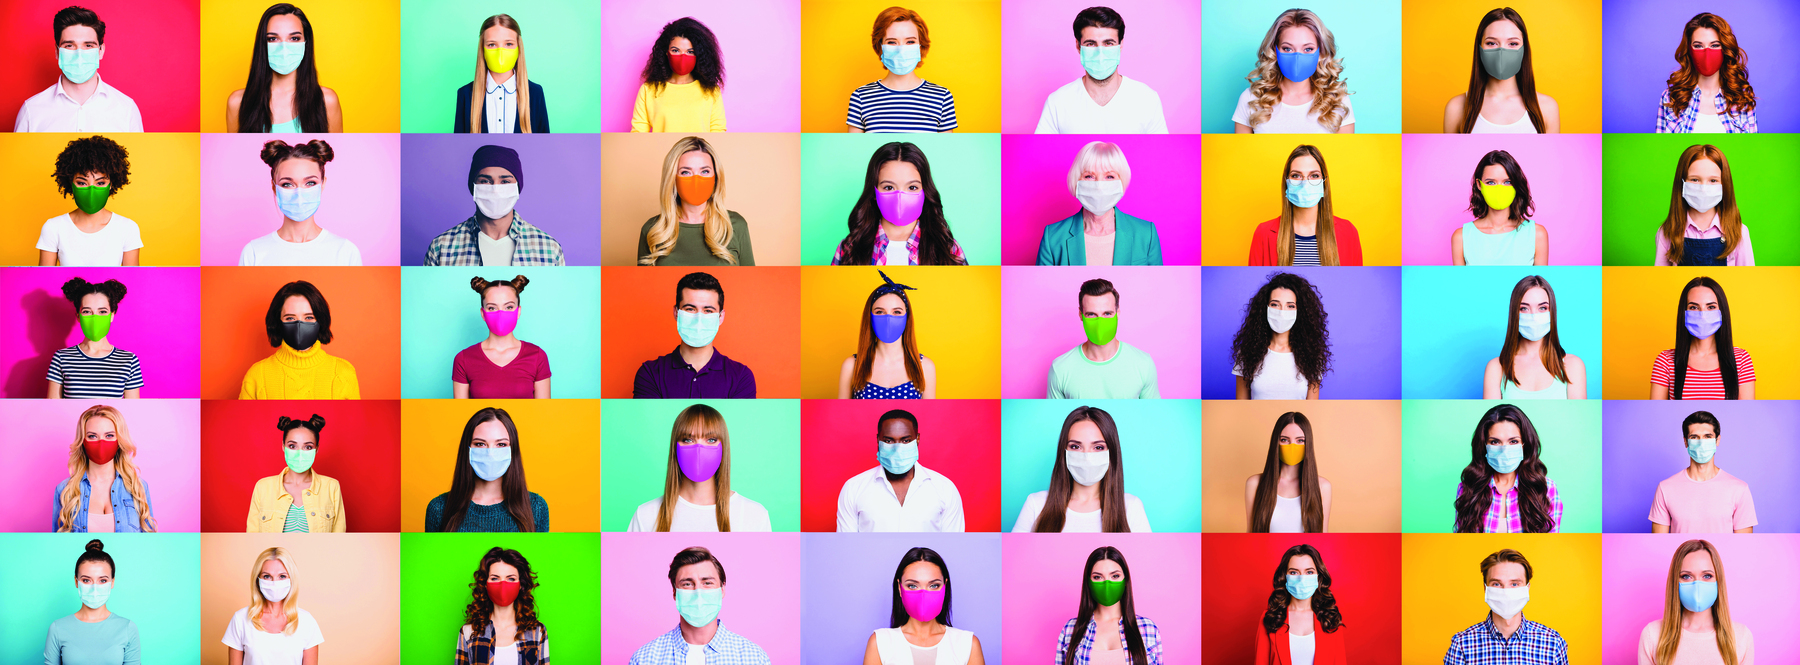 Fotografia. Painel composto por cinco linhas e 9 colunas de quadrados coloridos com imagens de pessoas de cores, cabelos e idades variadas entre homens e mulheres. Todas usam máscara de proteção cobrindo o nariz e a boca.